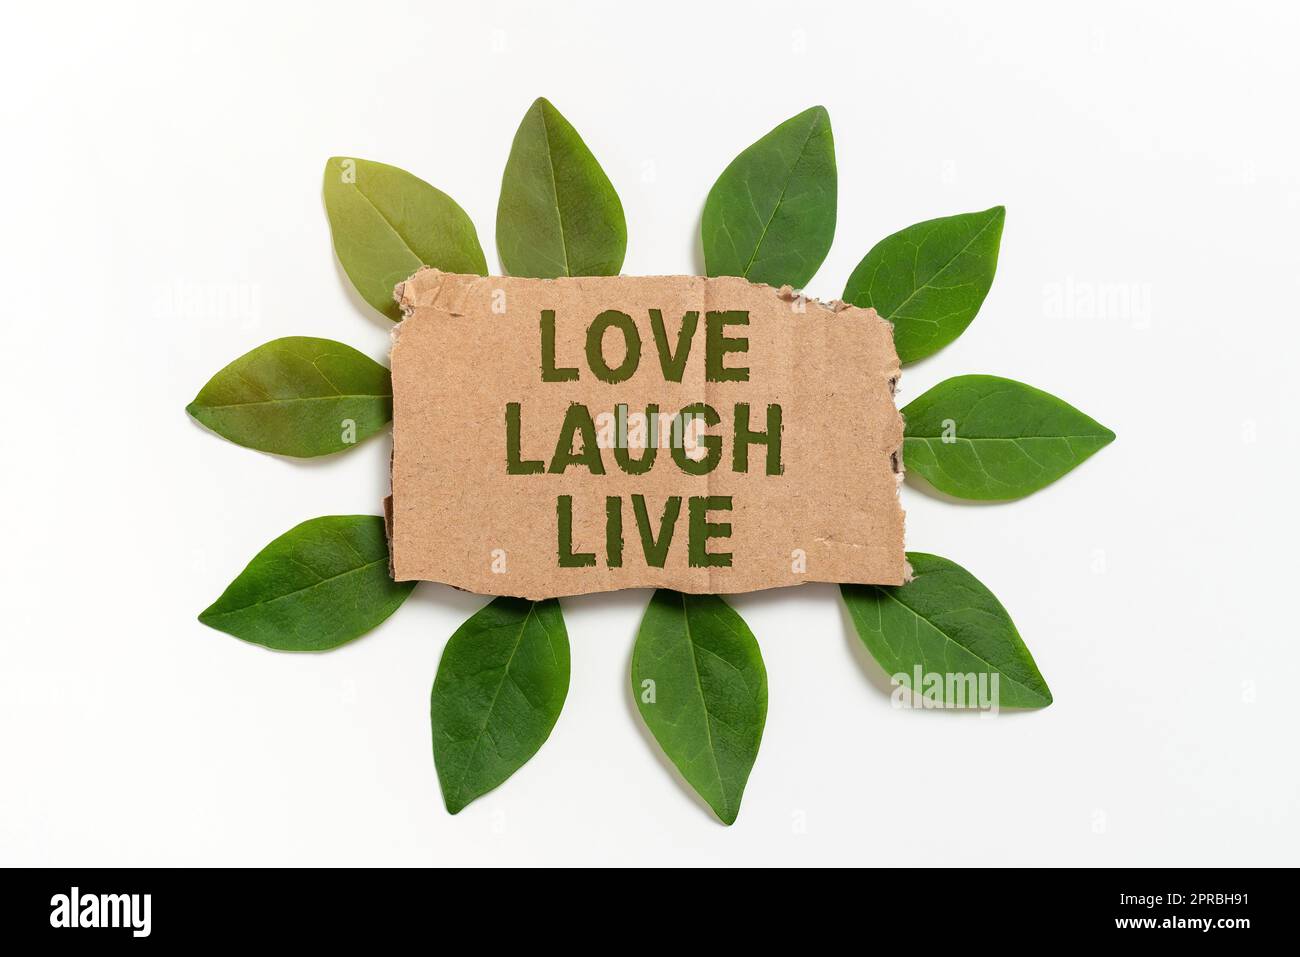 Affichage conceptuel Love Laugh Live. Photo conceptuelle soyez inspiré positif Profitez de vos jours riant bonne humeur carton vierge papier entouré de feuilles pour carte d'invitation. Banque D'Images